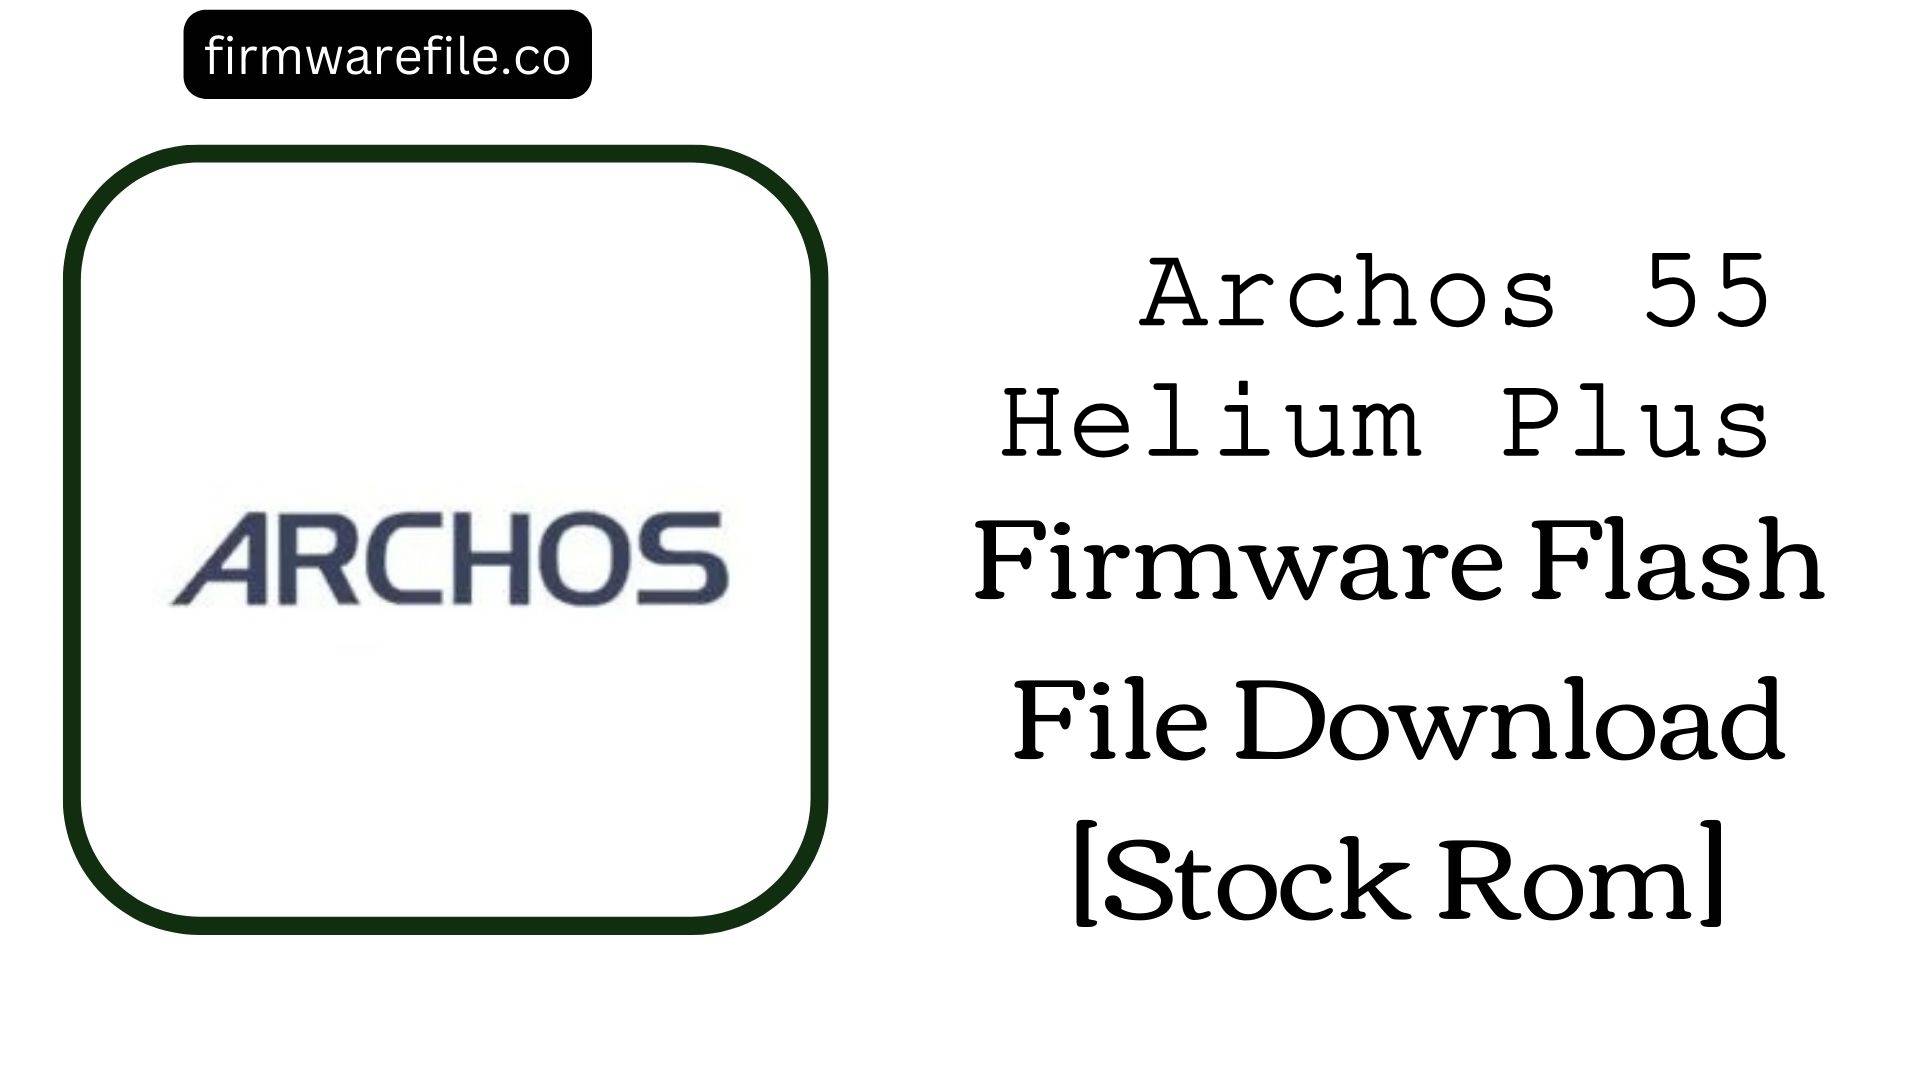 Archos 55 Helium Plus